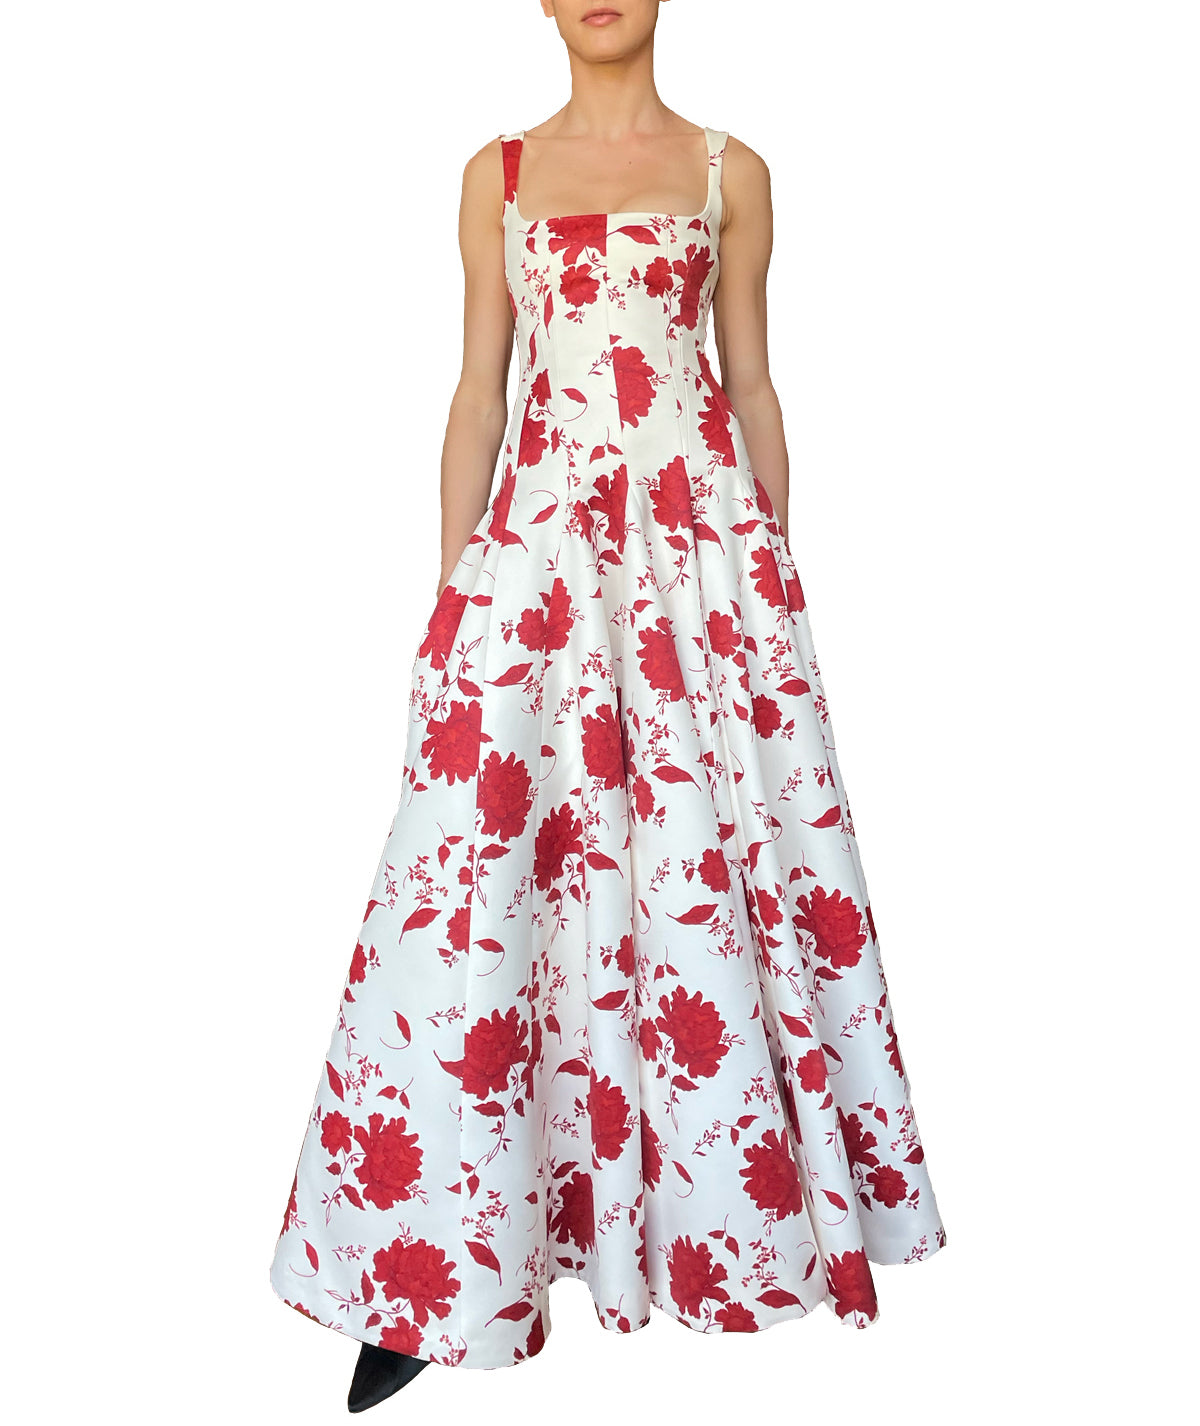 Viri Dress in Red Rose Print and Cream